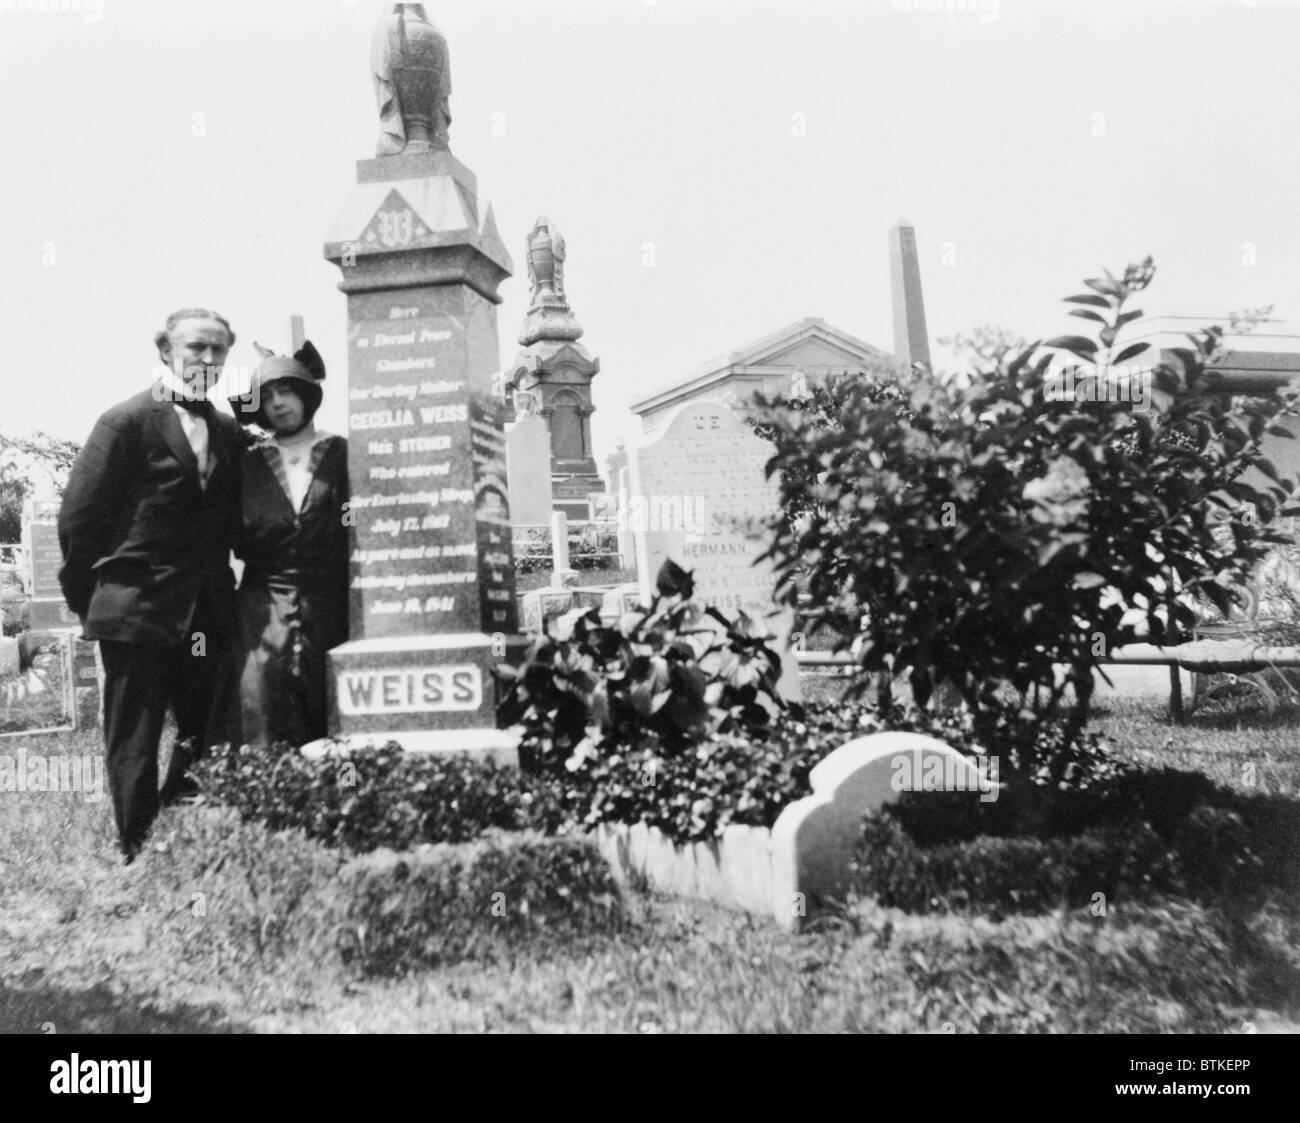 Bess und Harry Houdini bei seiner geliebten Mutter, Cecilia das Grab. Nach ihrem Tod ausgesetzt Houdini die Methoden der Spiritisten, die das Leid der Hinterbliebenen preyed. Ca. 1915. Stockfoto